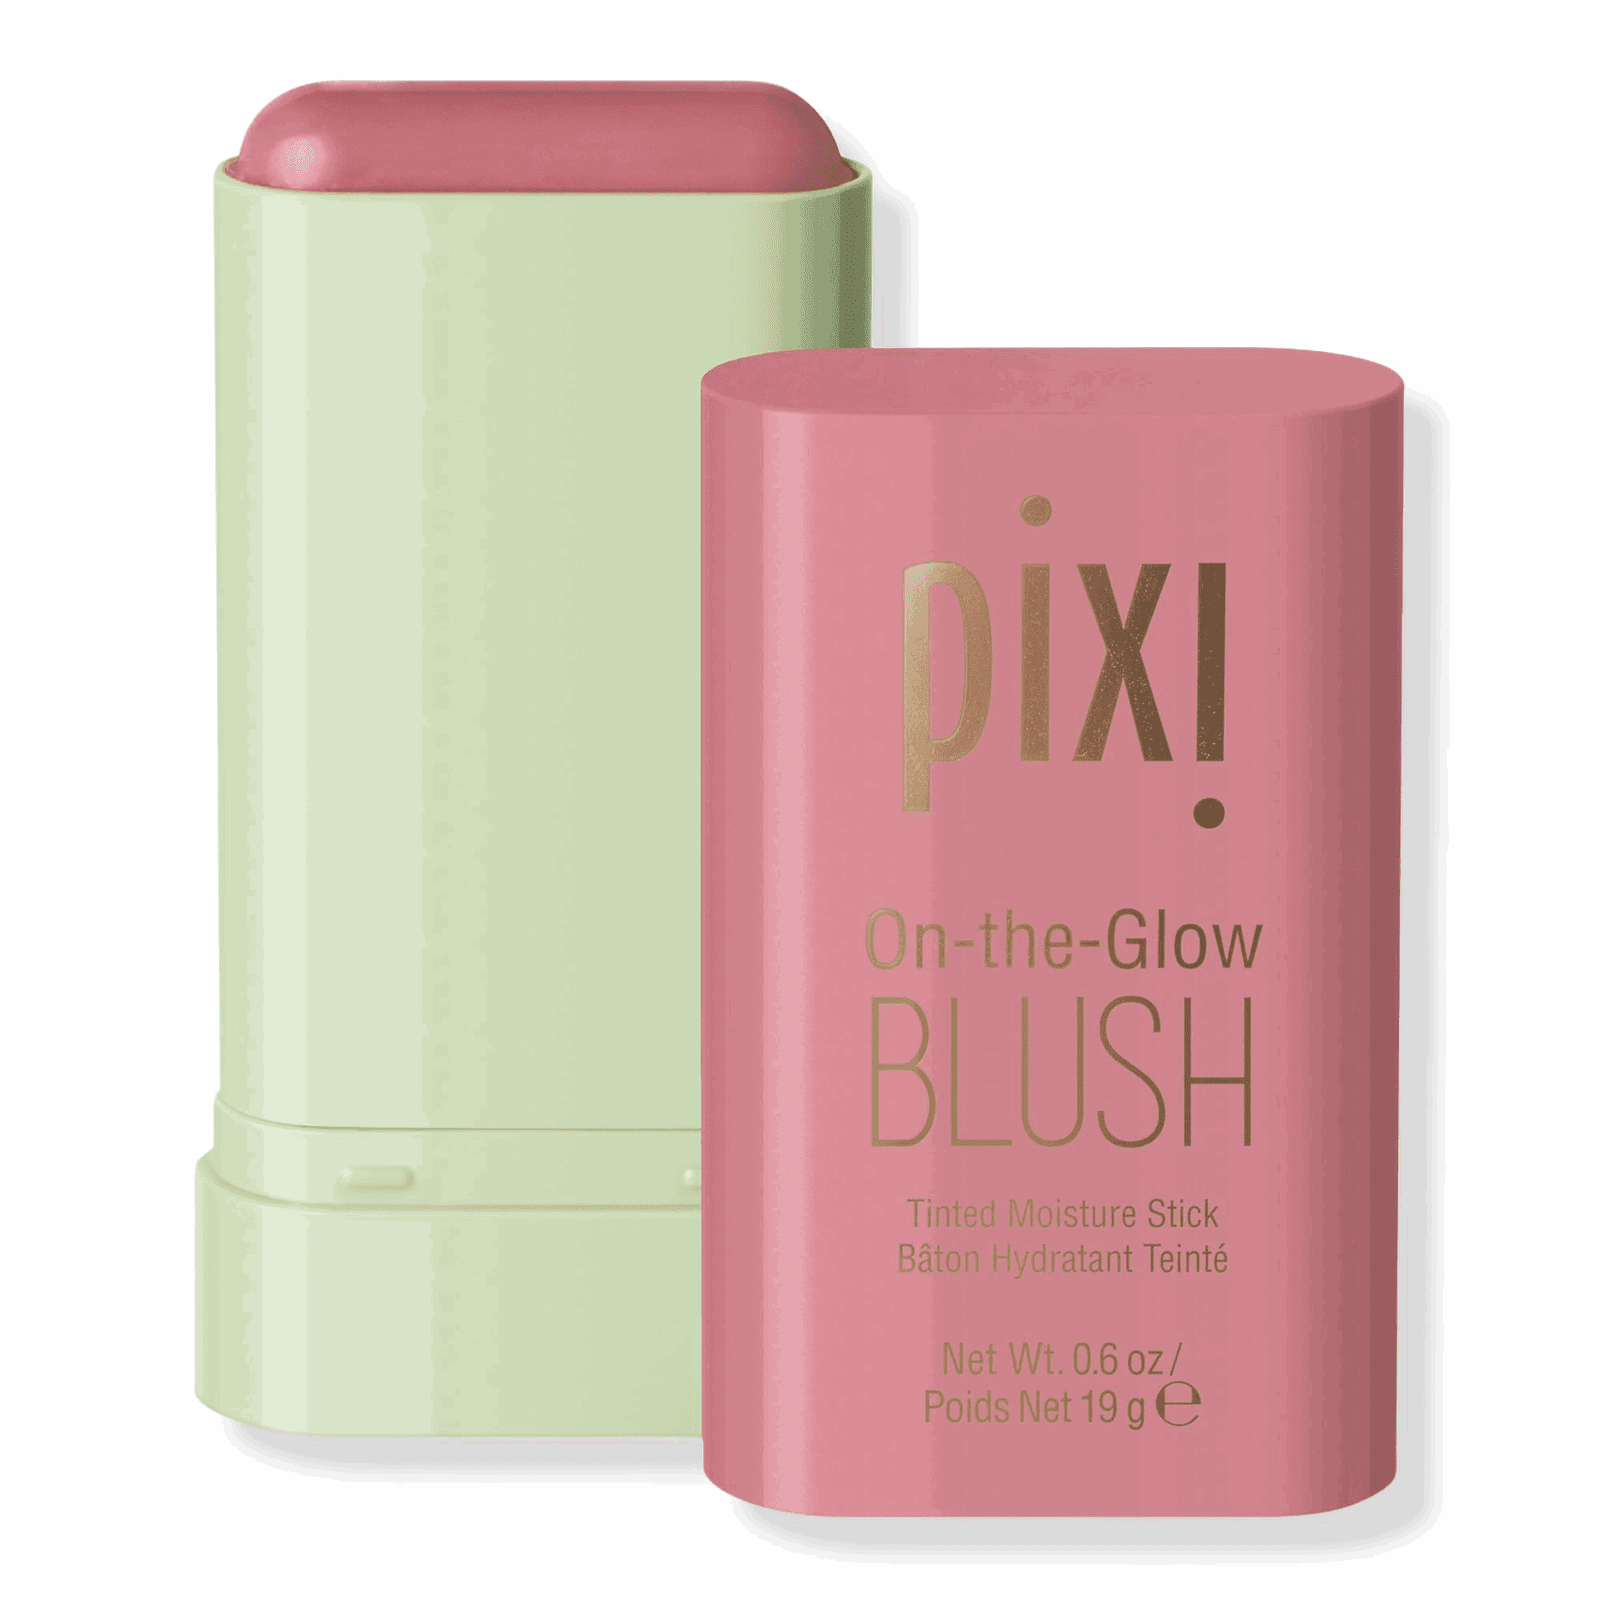 Ciel Divonne Pink PIXI On-the-Go Makeup Blush Stick